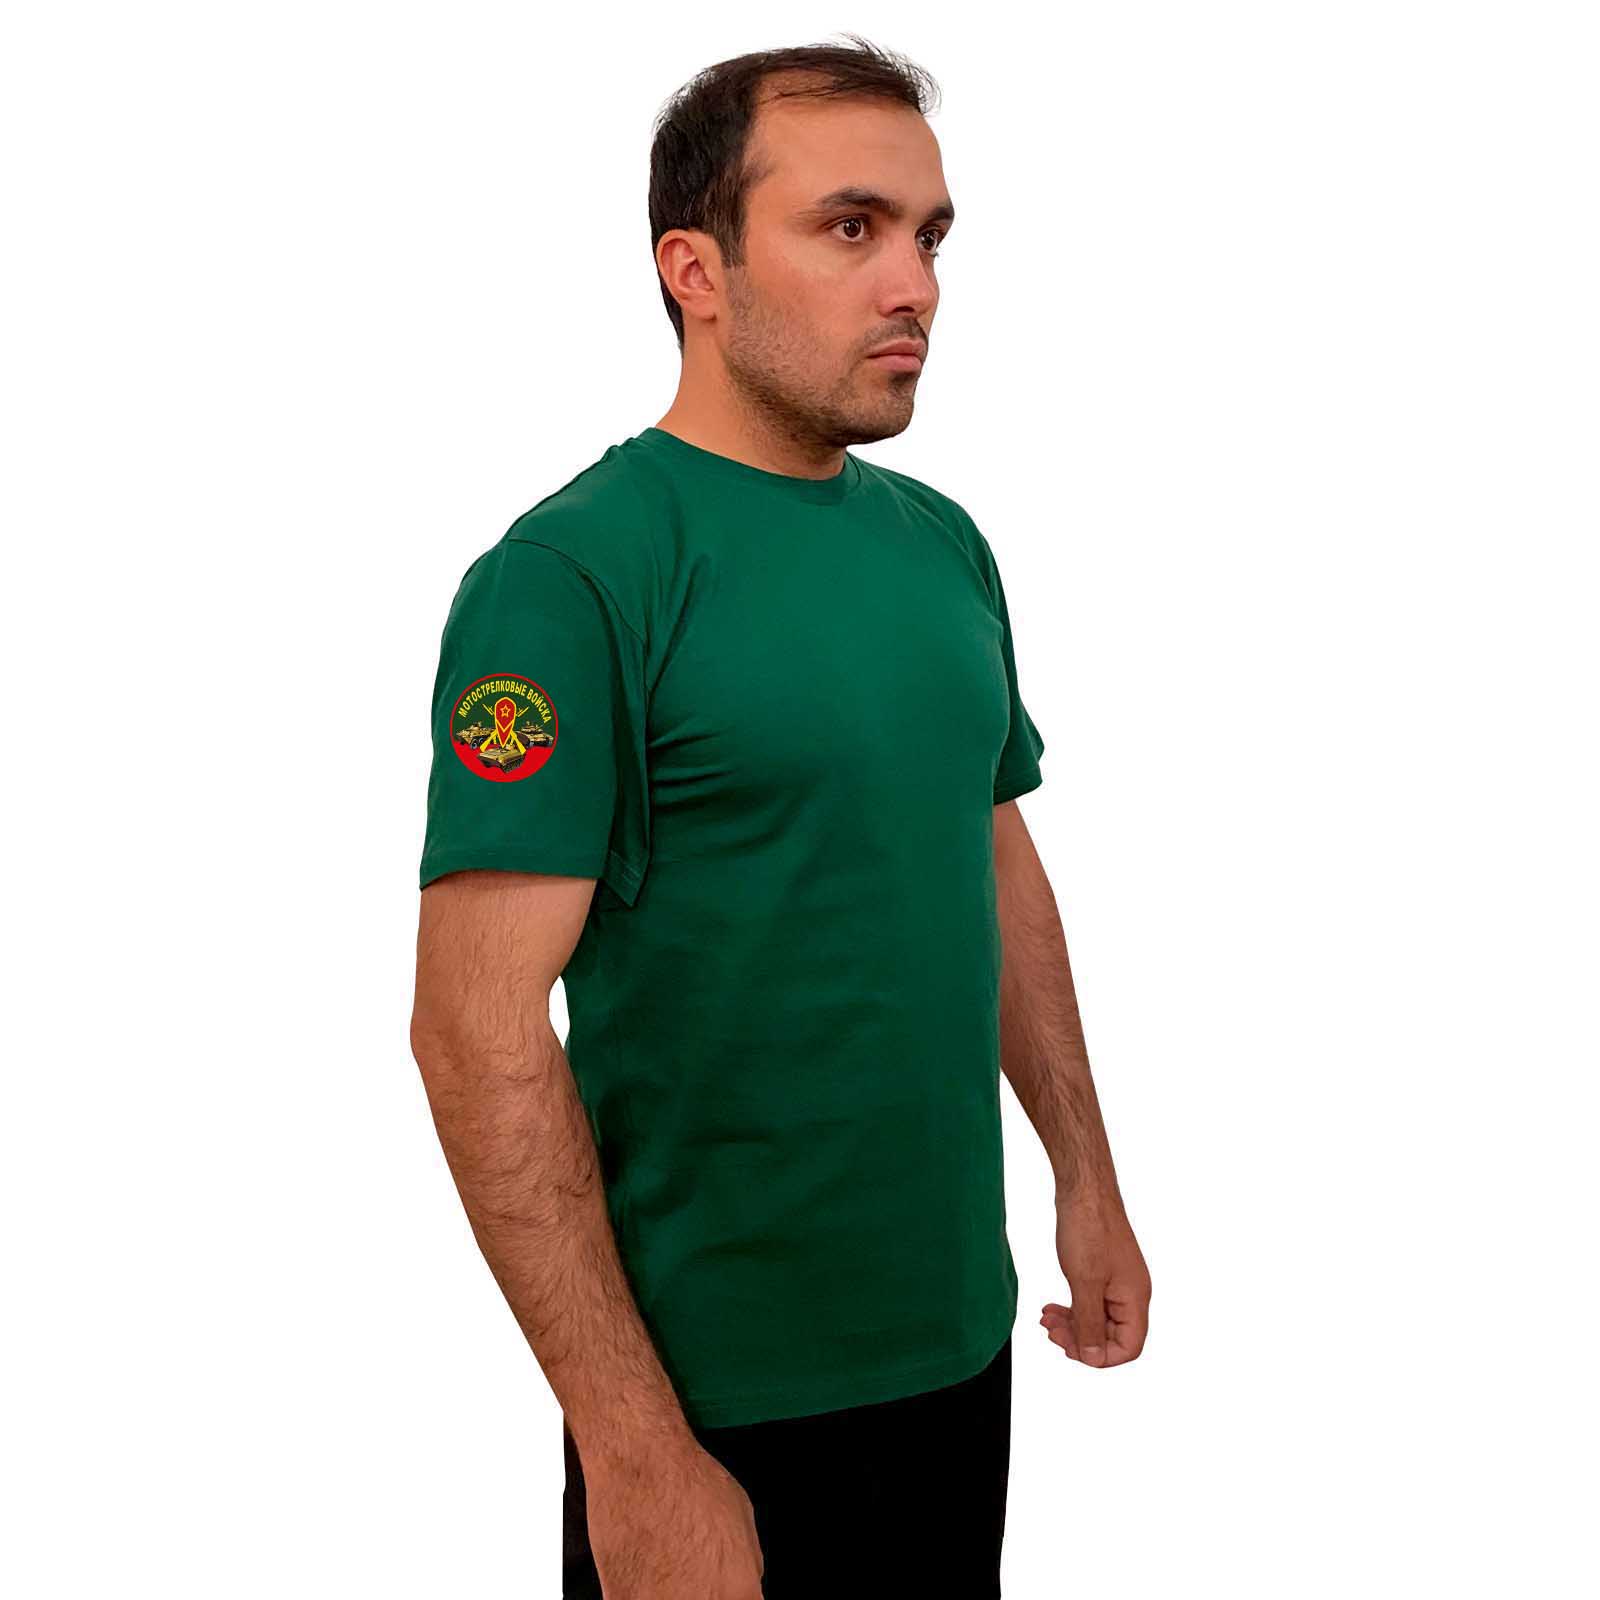 Купить зеленую хлопковую футболку с термотрансфером Мотострелковые Войска выгодно